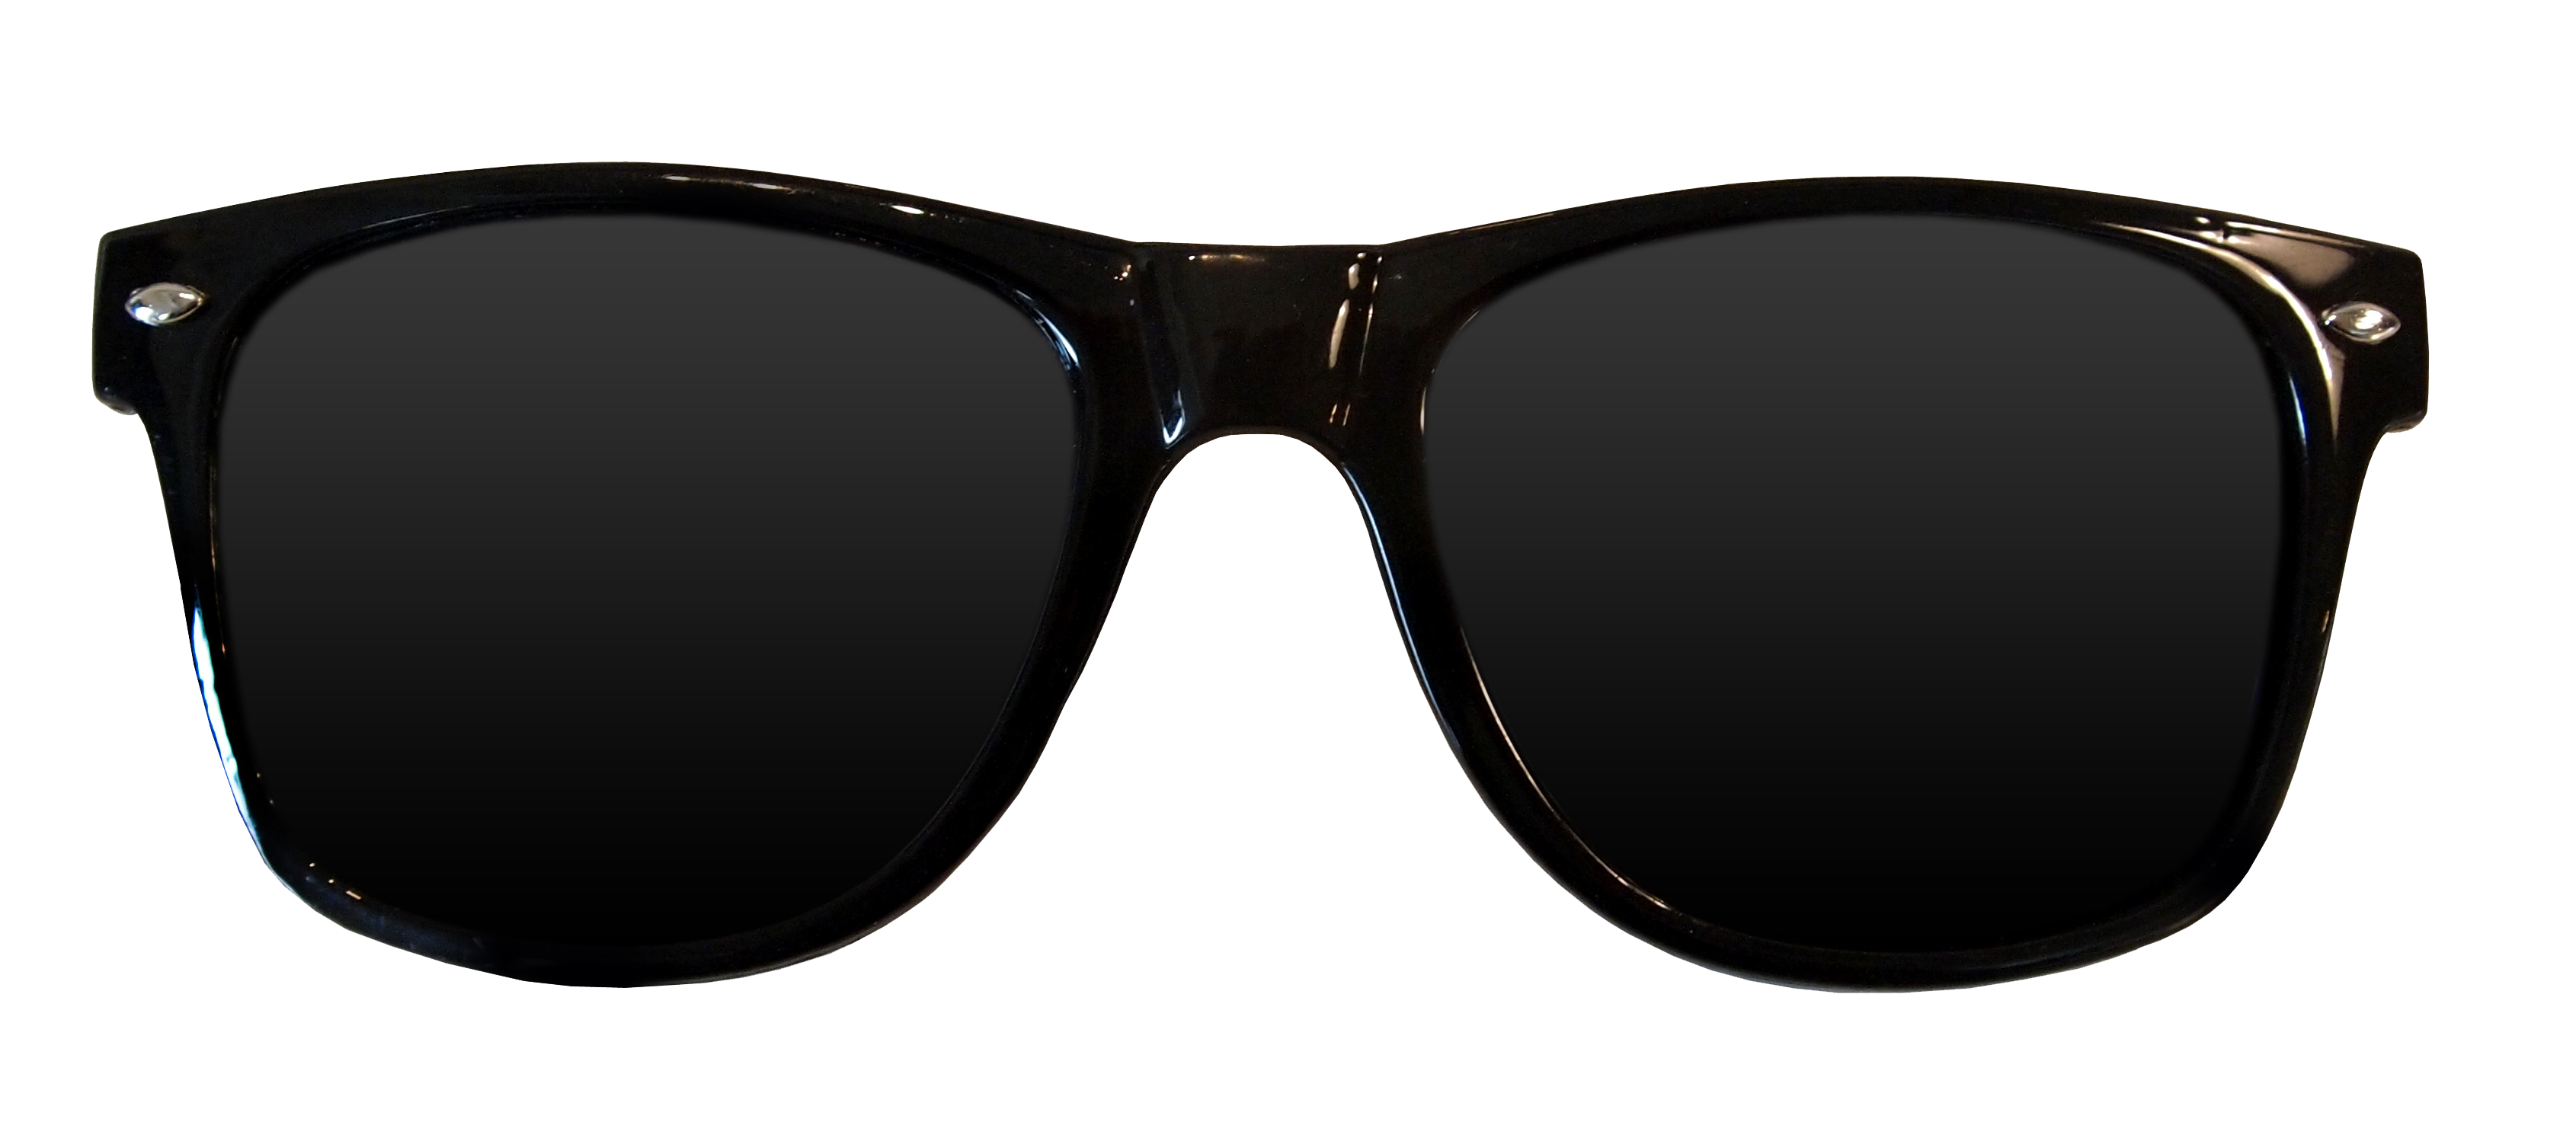 Kacamata hitam PNG Pic